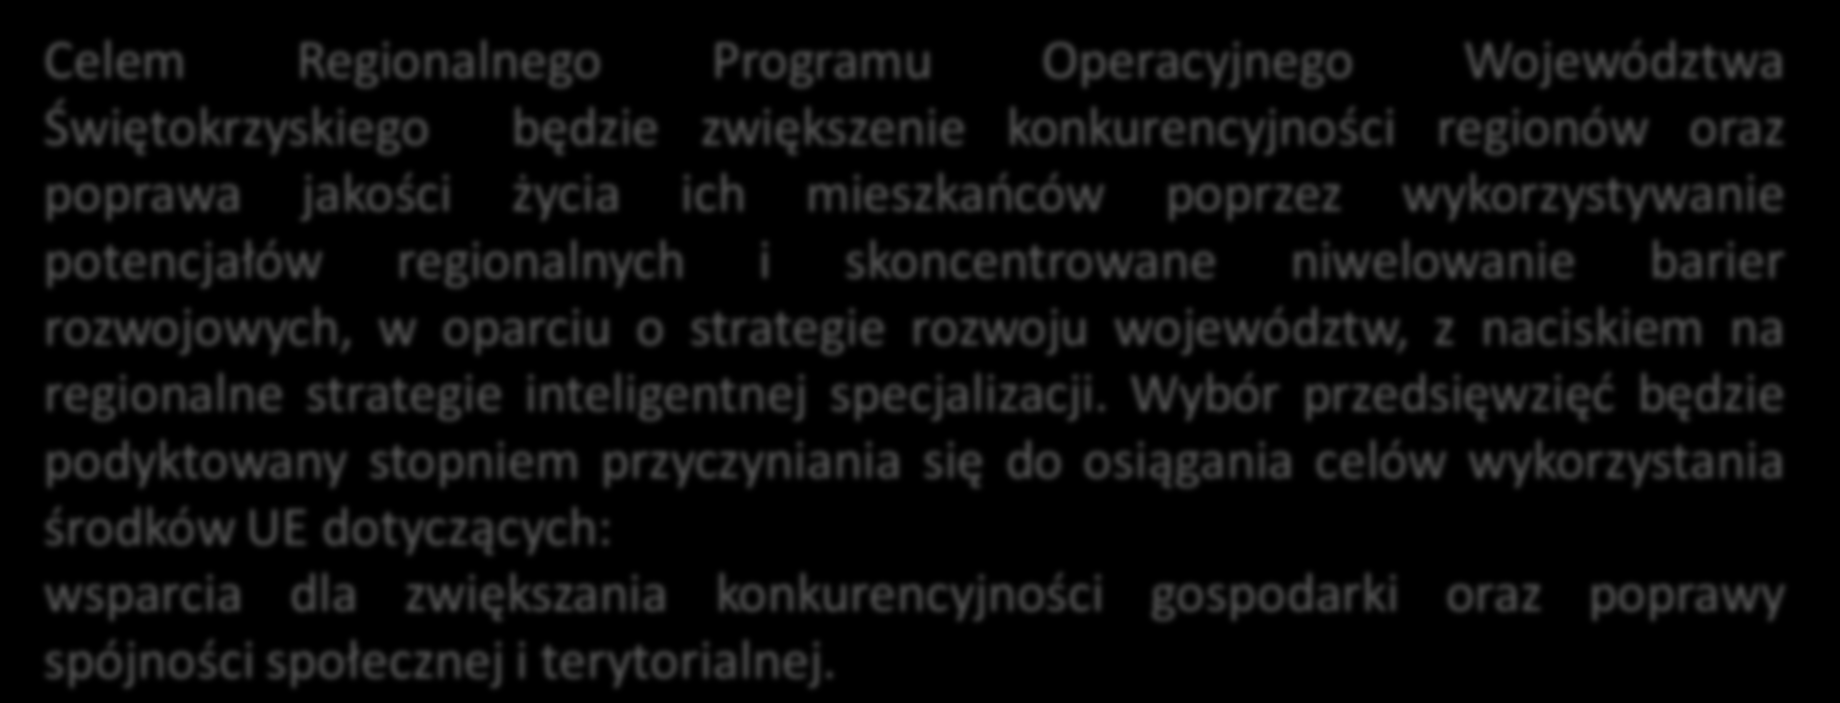 Regionalny Program Operacyjny Województwa Świętokrzyskiego Celem Regionalnego Programu Operacyjnego Województwa Świętokrzyskiego będzie zwiększenie konkurencyjności regionów oraz poprawa jakości